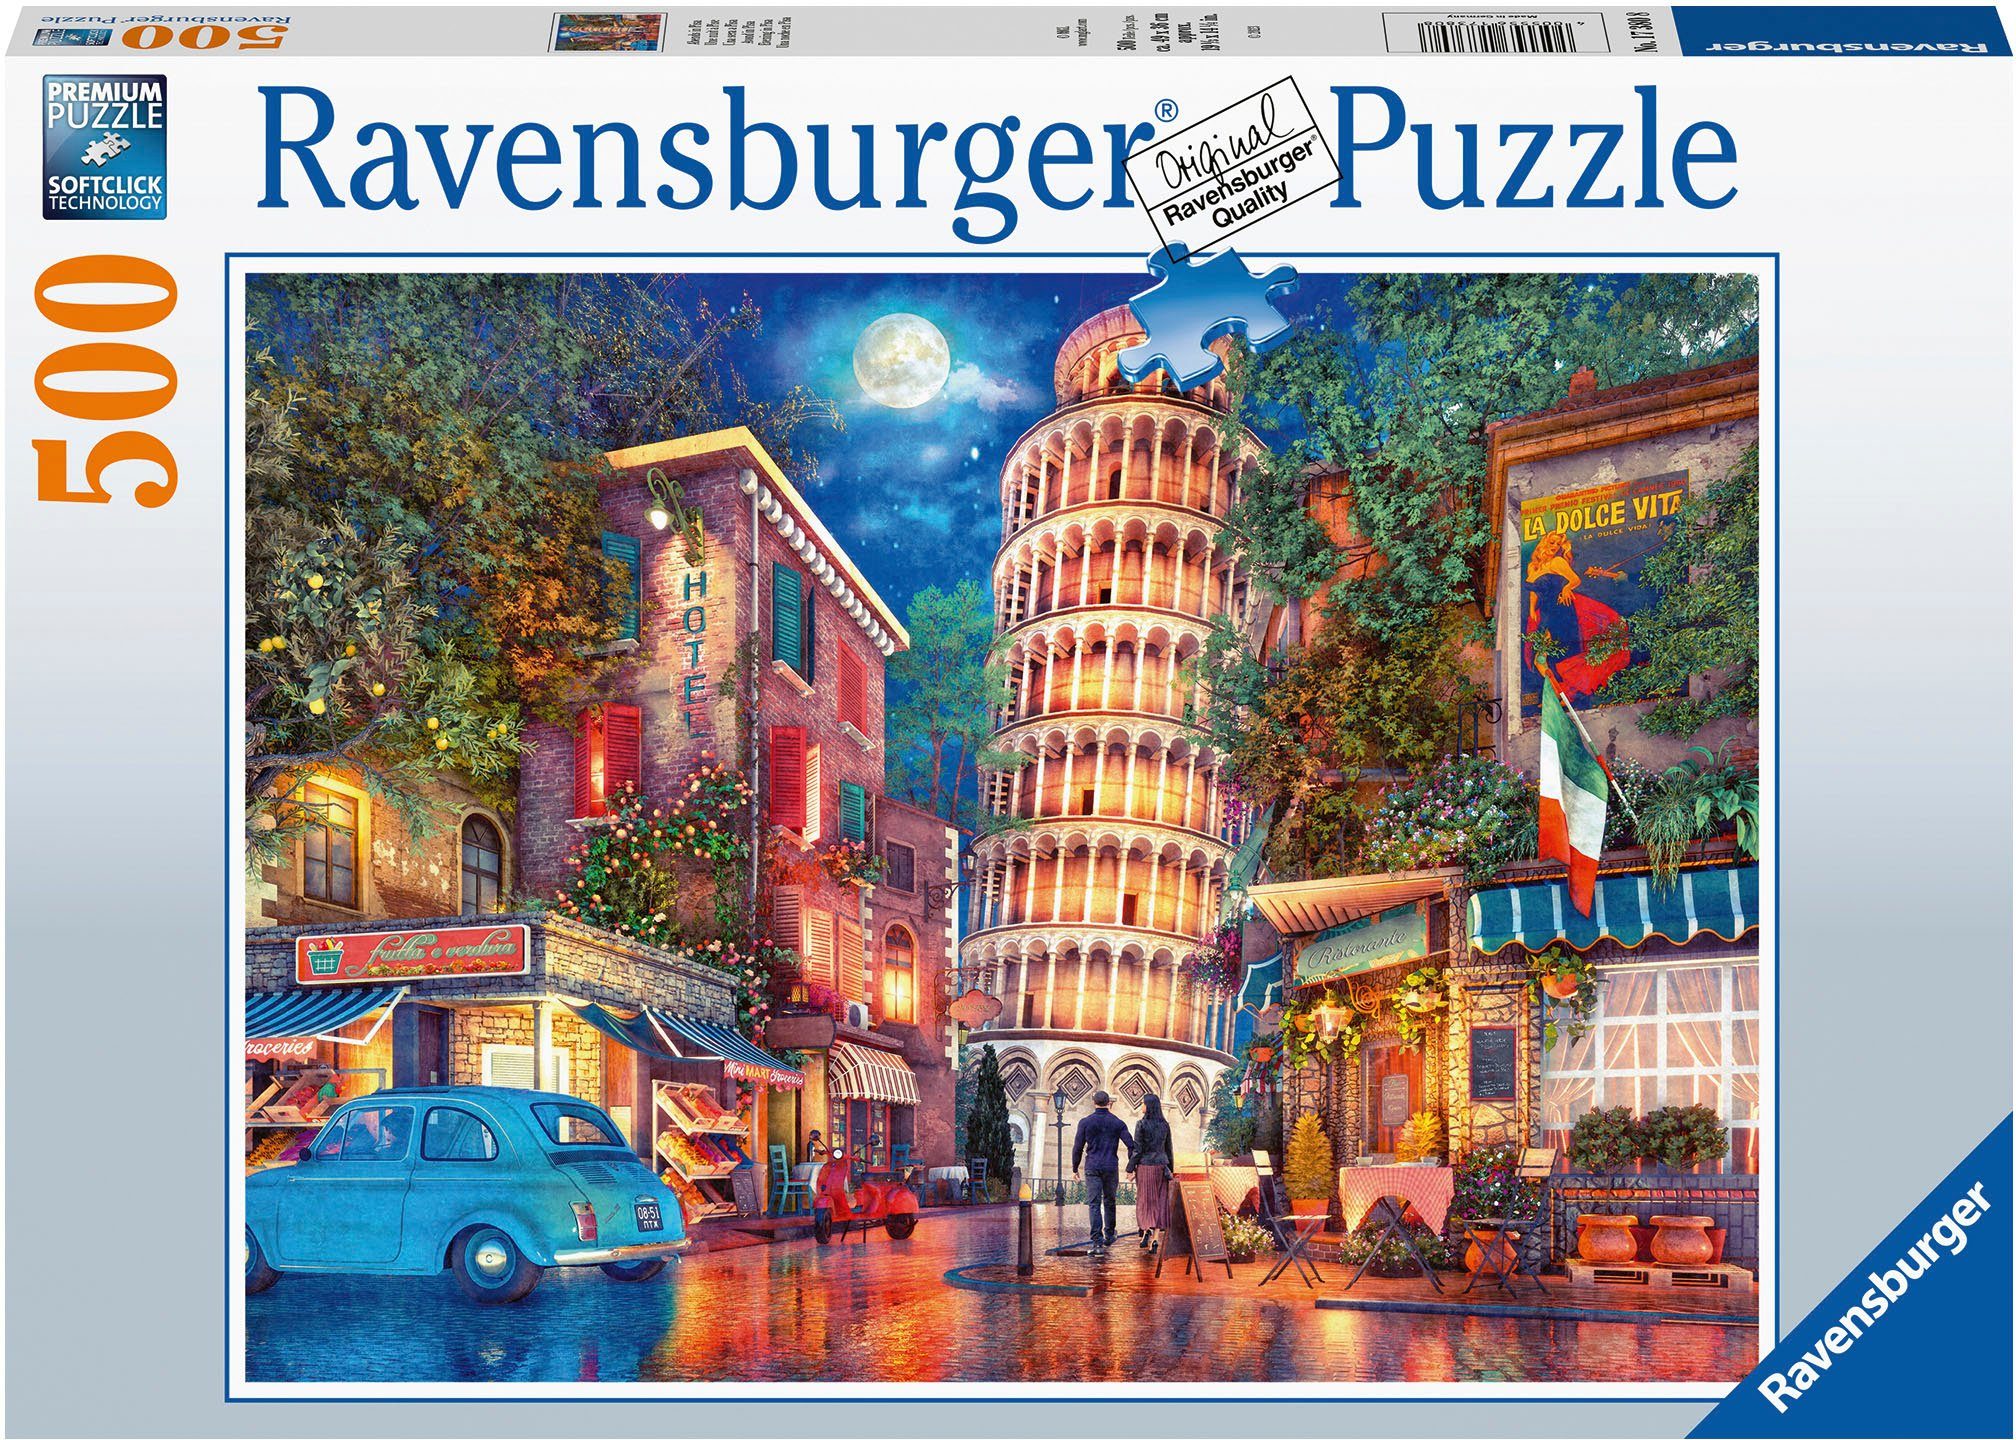 Ravensburger Puzzle Abends in Pisa, 500 Puzzleteile, Made in Germany; FSC® - schützt Wald - weltweit